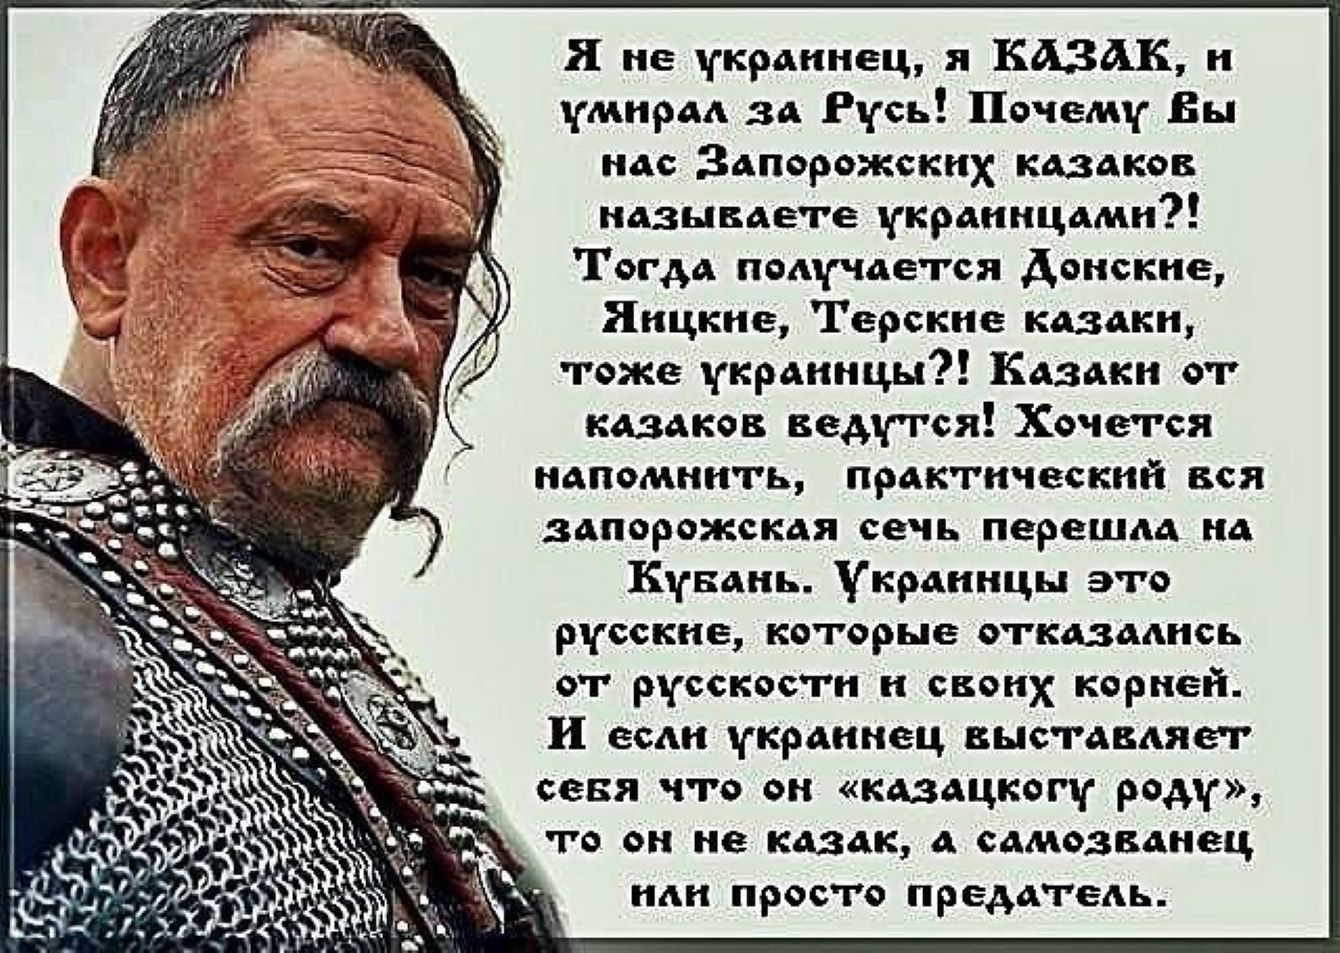 Почему великая русь. Цитаты про украинцев. Украинцы не казаки. Высказывания запорожских Казаков. Казаки это украинцы или русские.